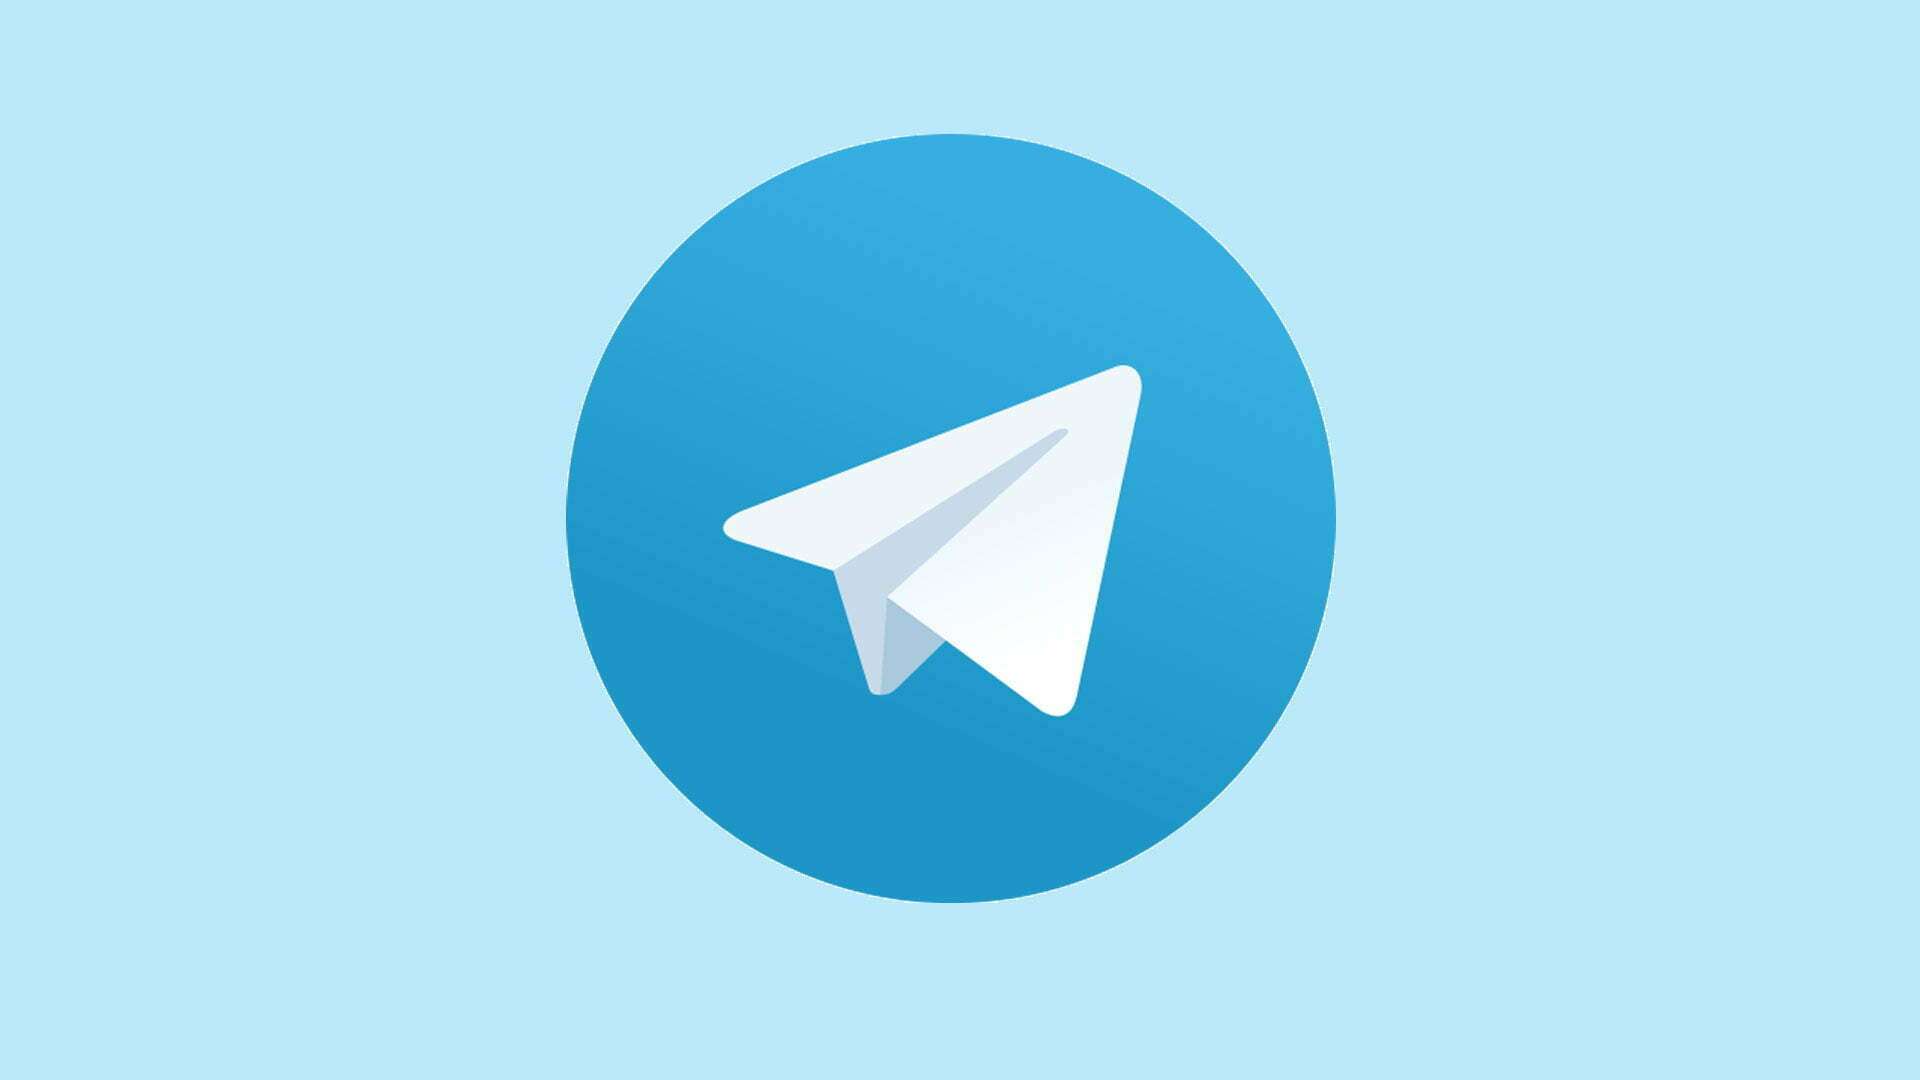 دانلود تلگرام اصلی آپدیت جدید با لینک مستقیم ایفون و اندروید